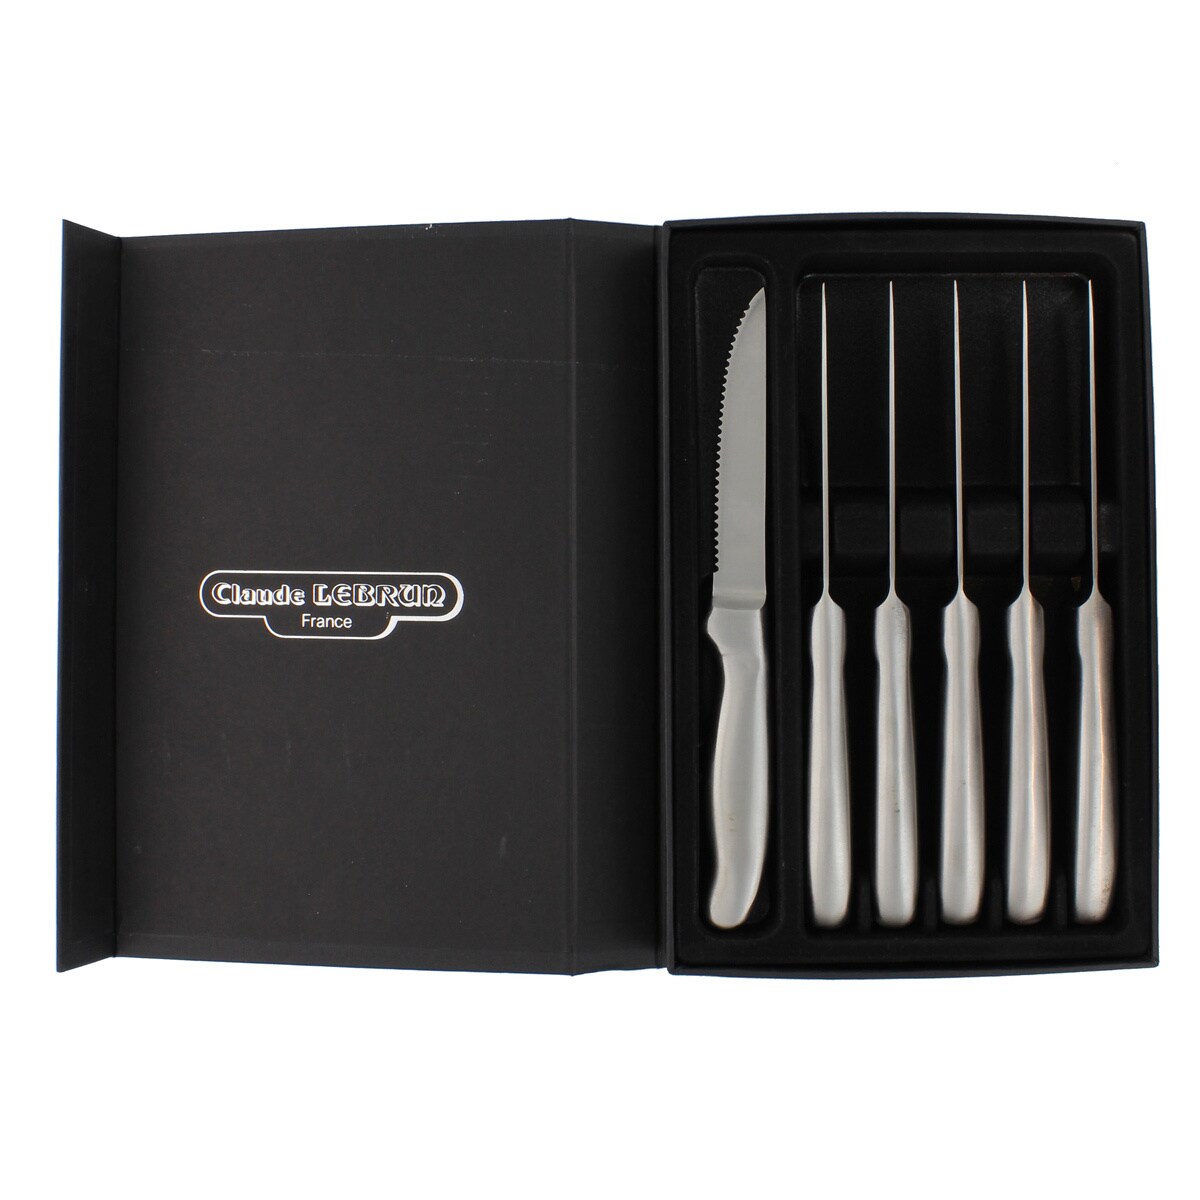 Chicago Cutlery Landmark Forged 8 Piece Steak Knife Set, Gift